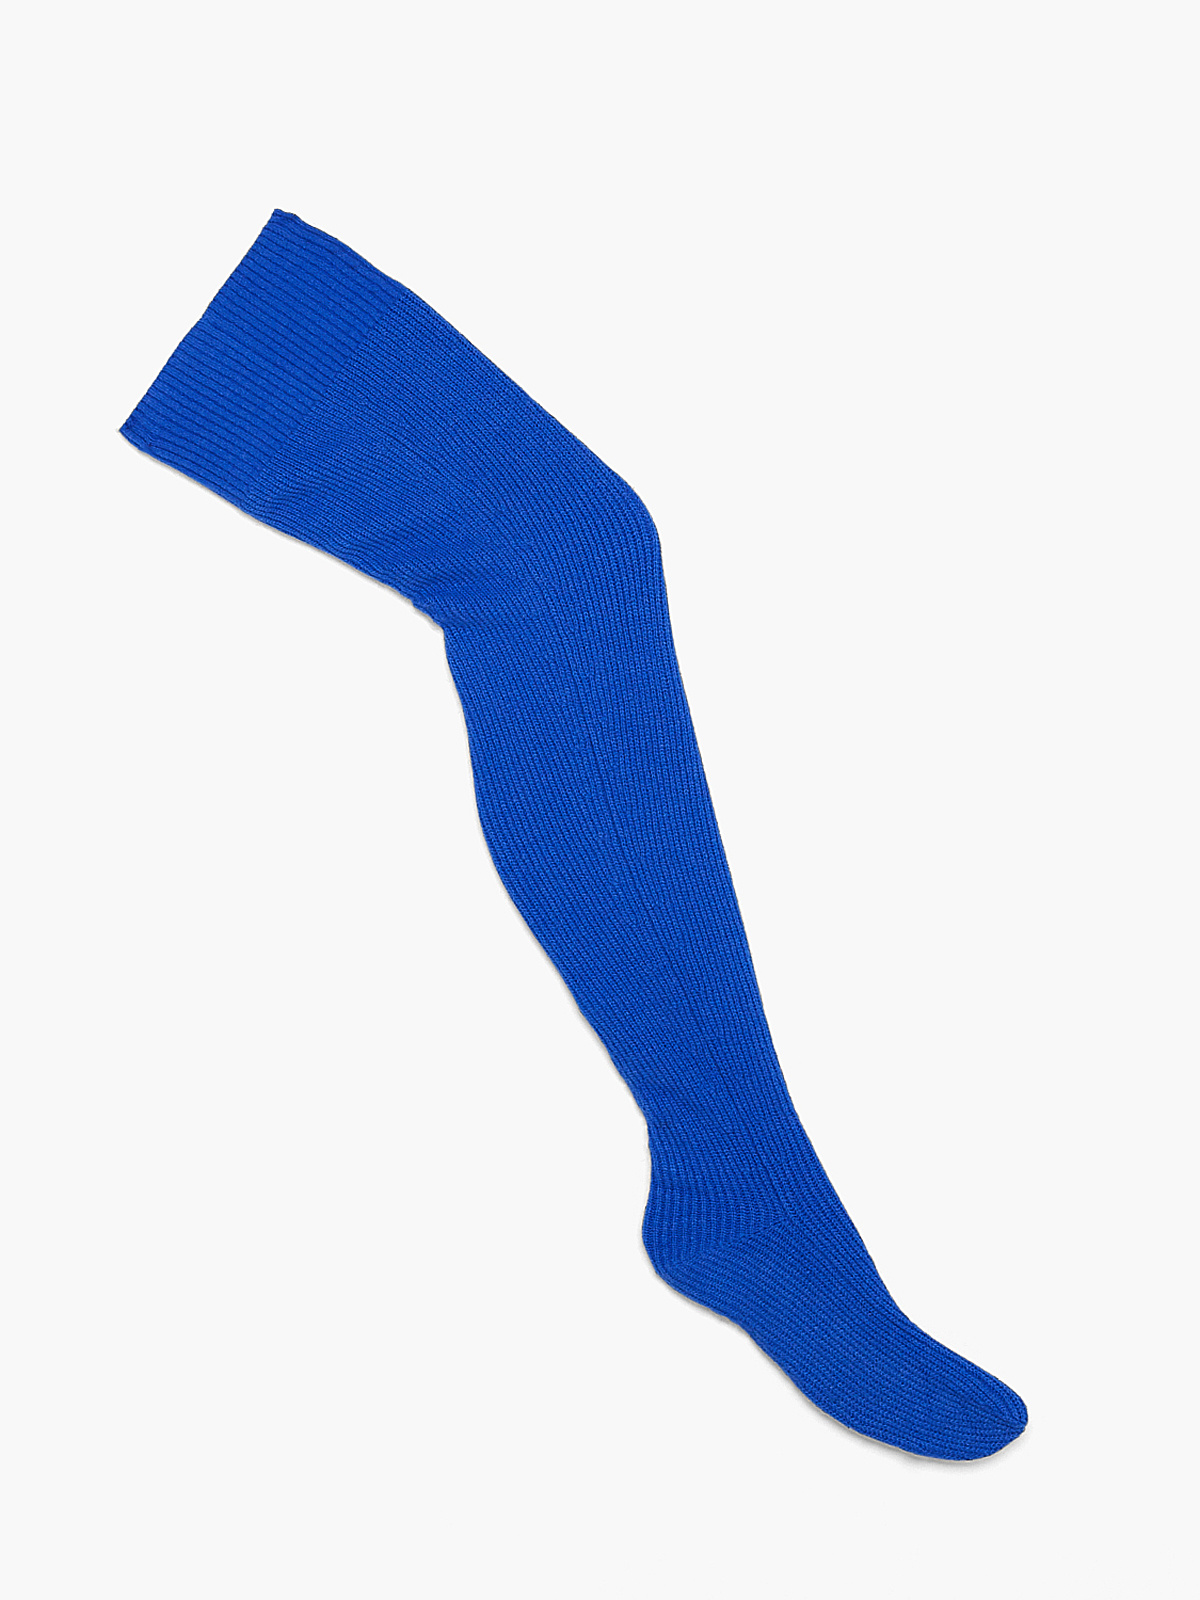 Ms. Minx Knit Slipper Stockings (1X-3X)